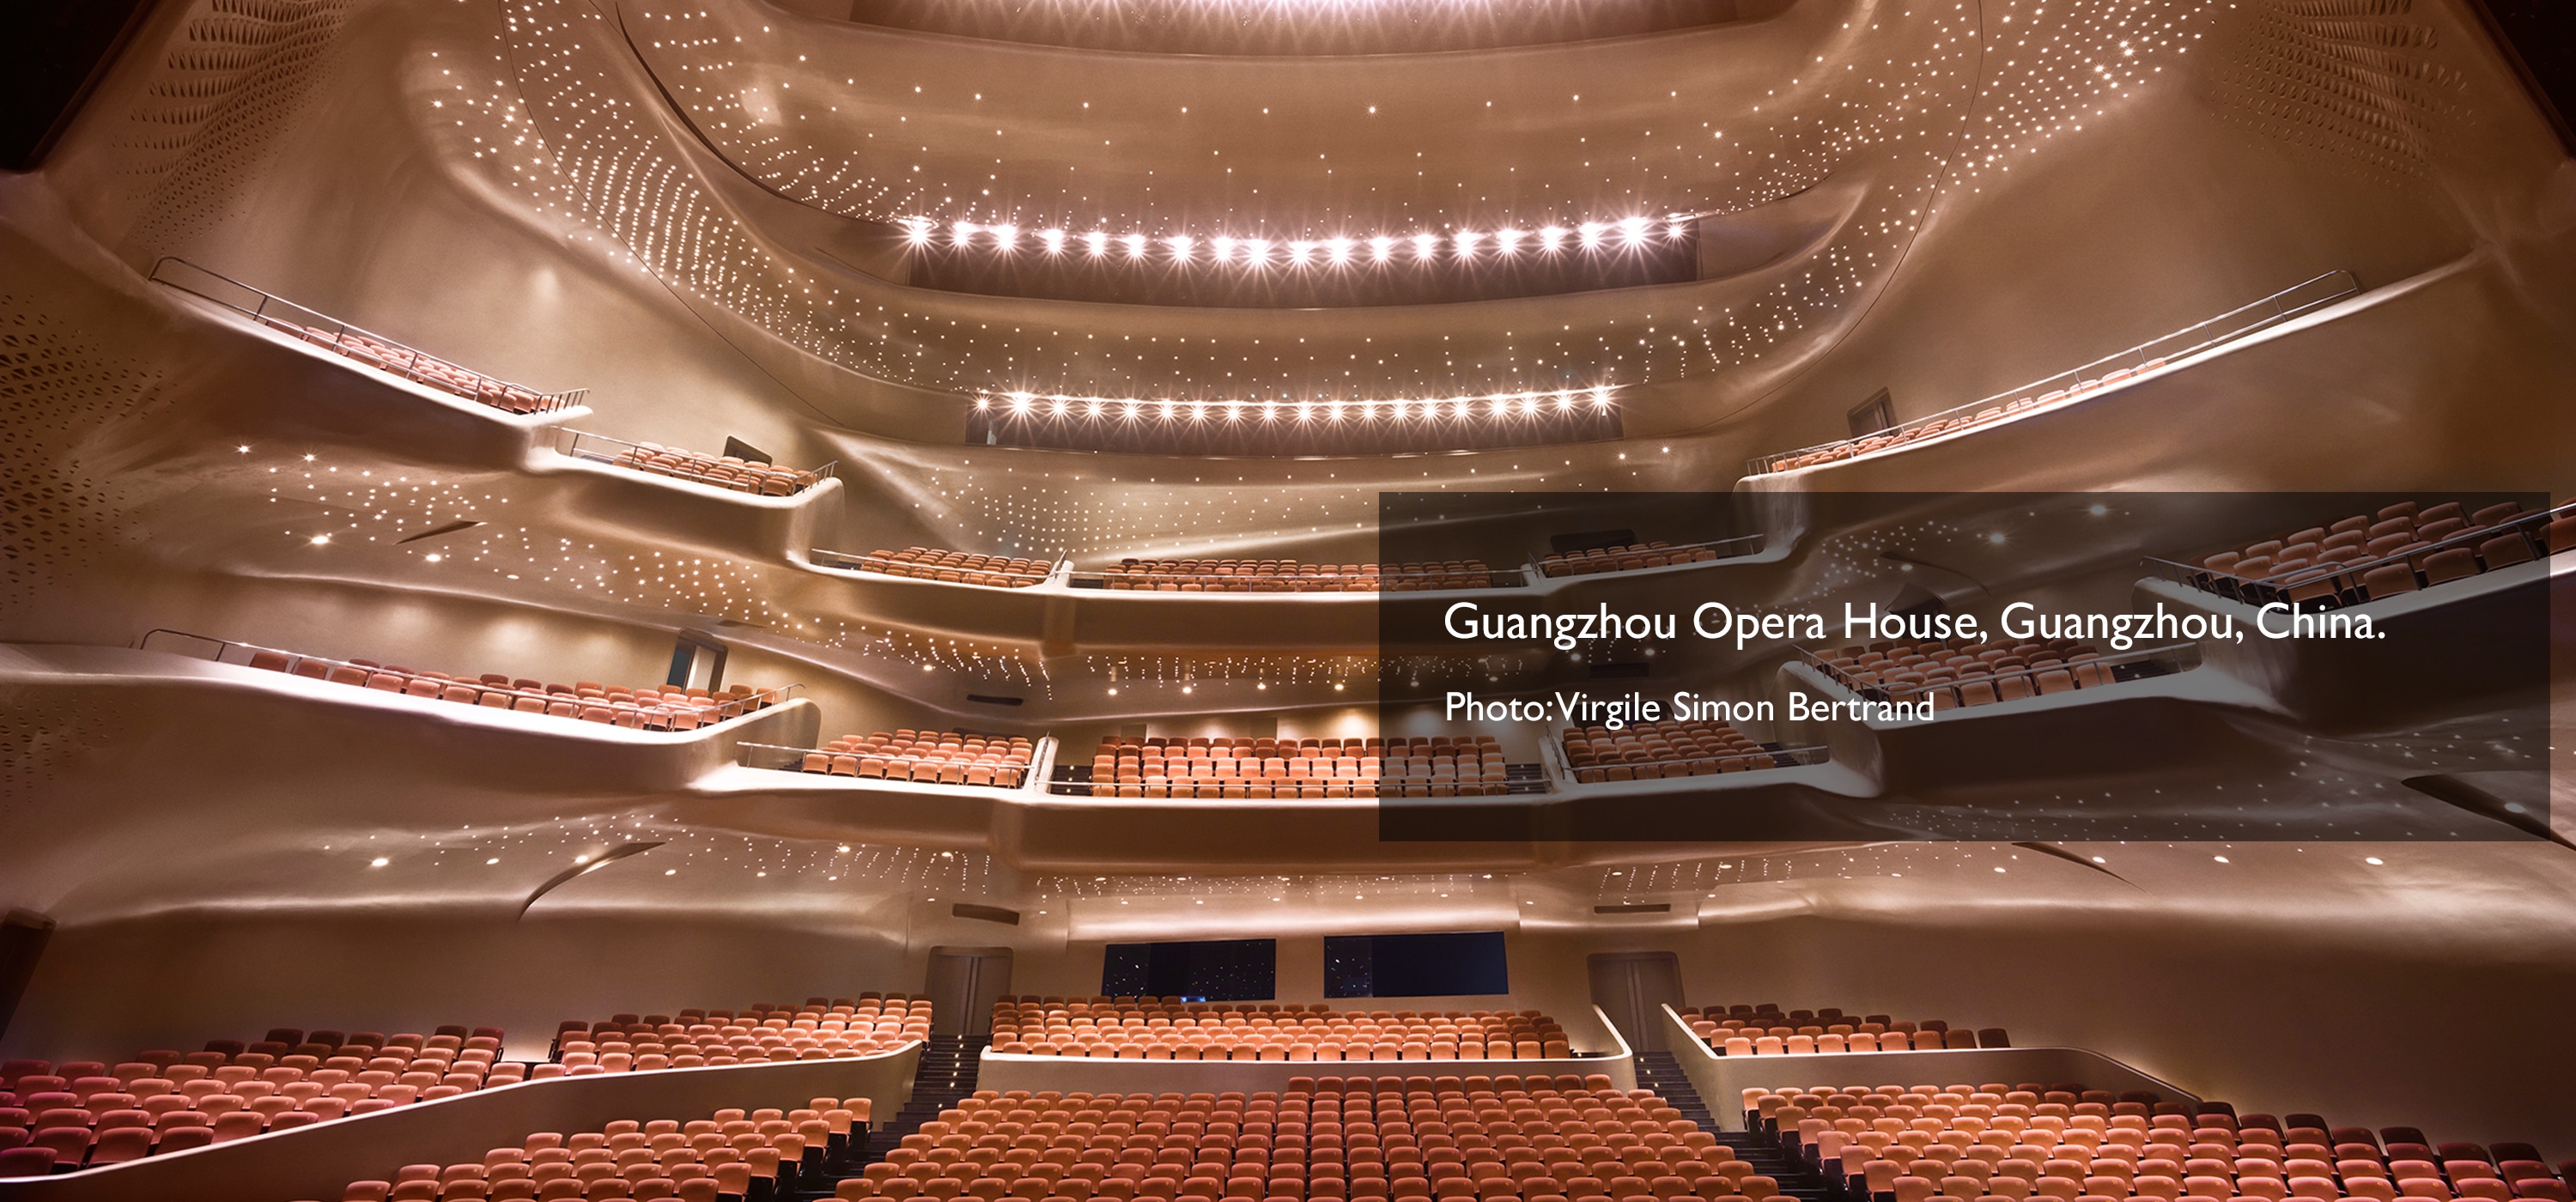 광저우 오페라 하우스, 중국 광저우. 사진: Virgile Simon Bertrand